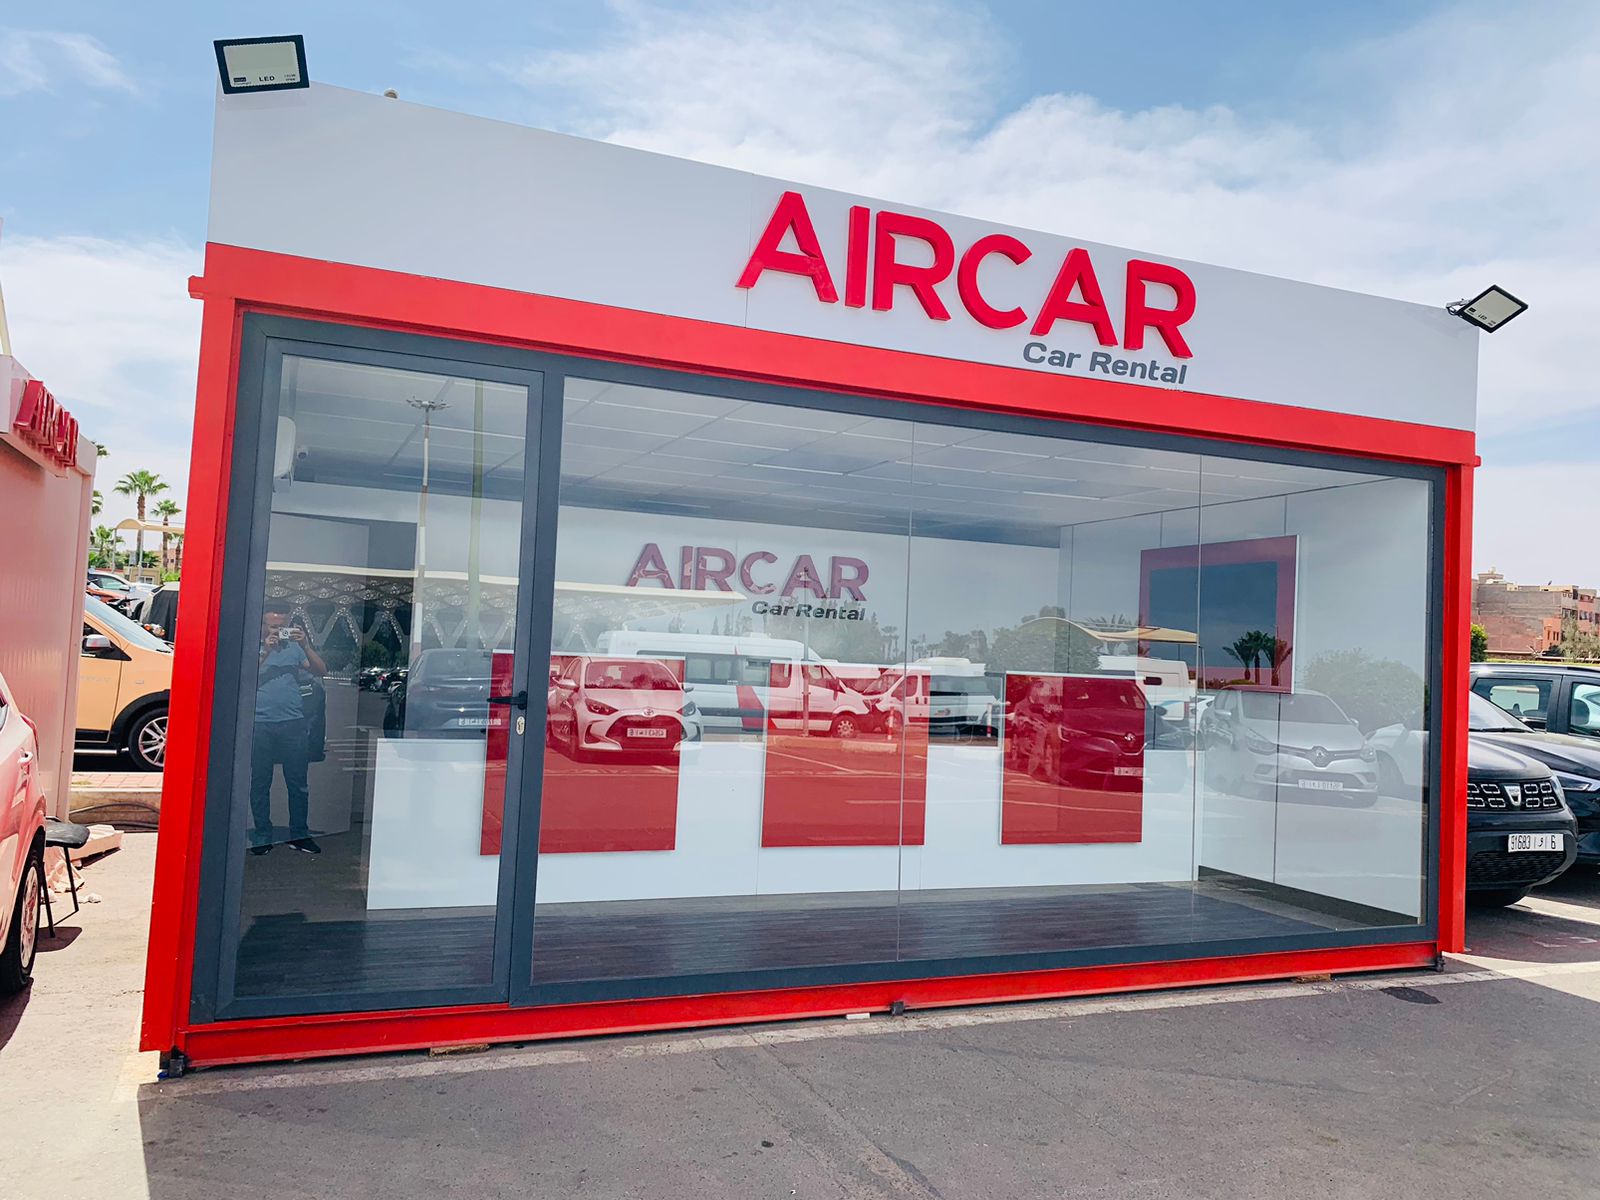 Aircar - Location de voiture au Maroc